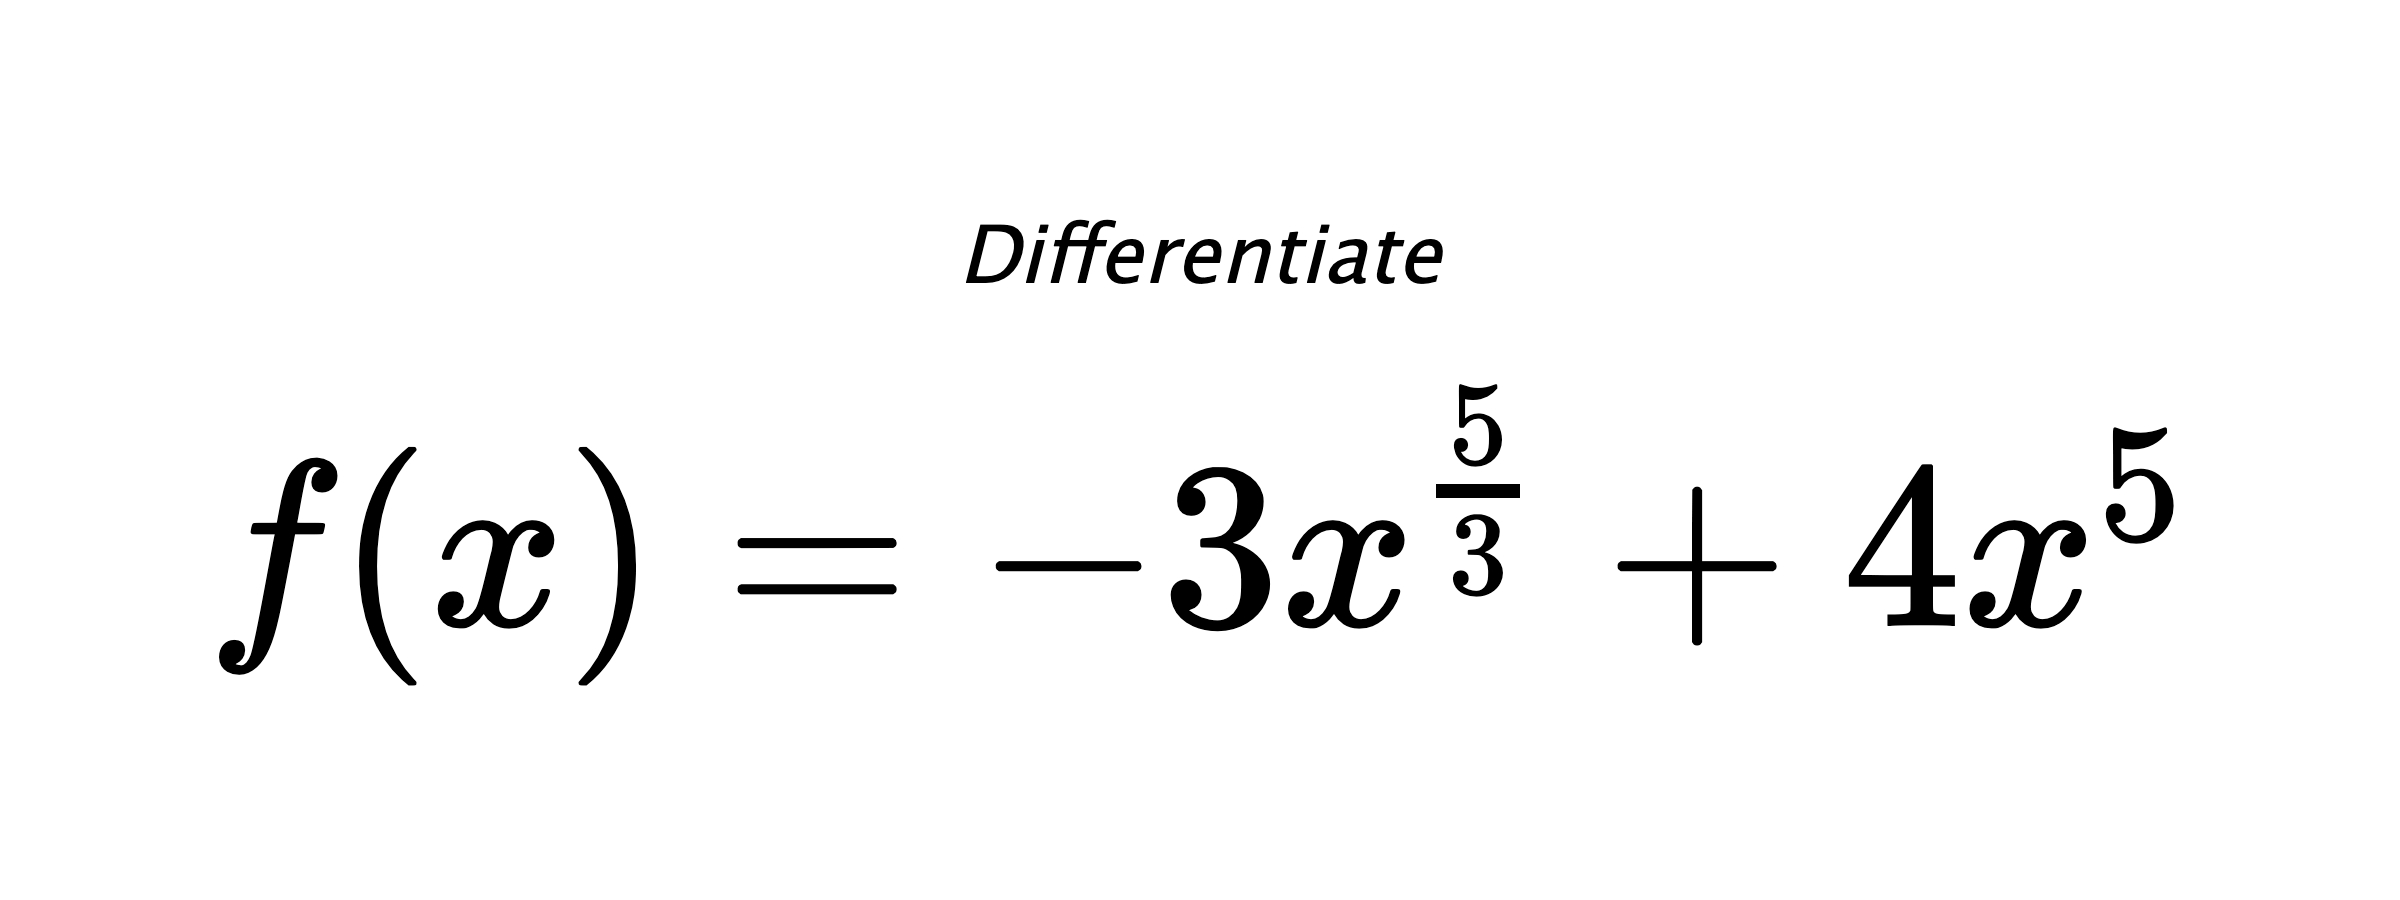 Differentiate $ f(x) = - 3 x^{\frac{5}{3}} + 4 x^{5} $